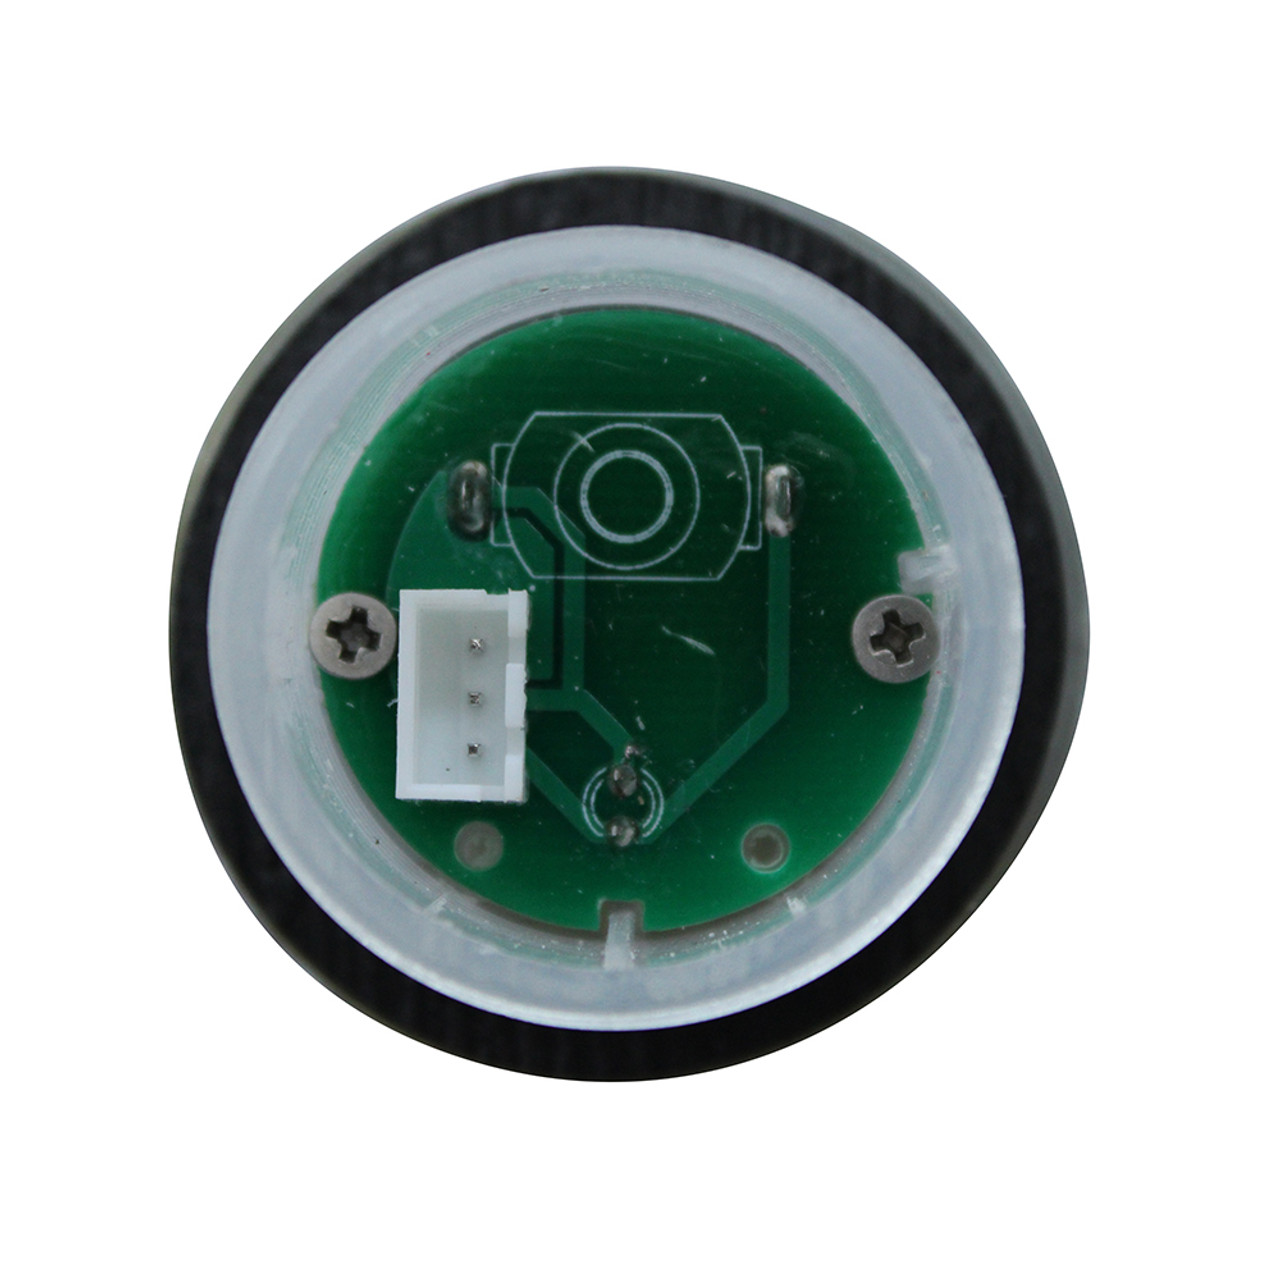 Master Spa - X311013 - LED Photocell Module Sensor for Dream Lighting